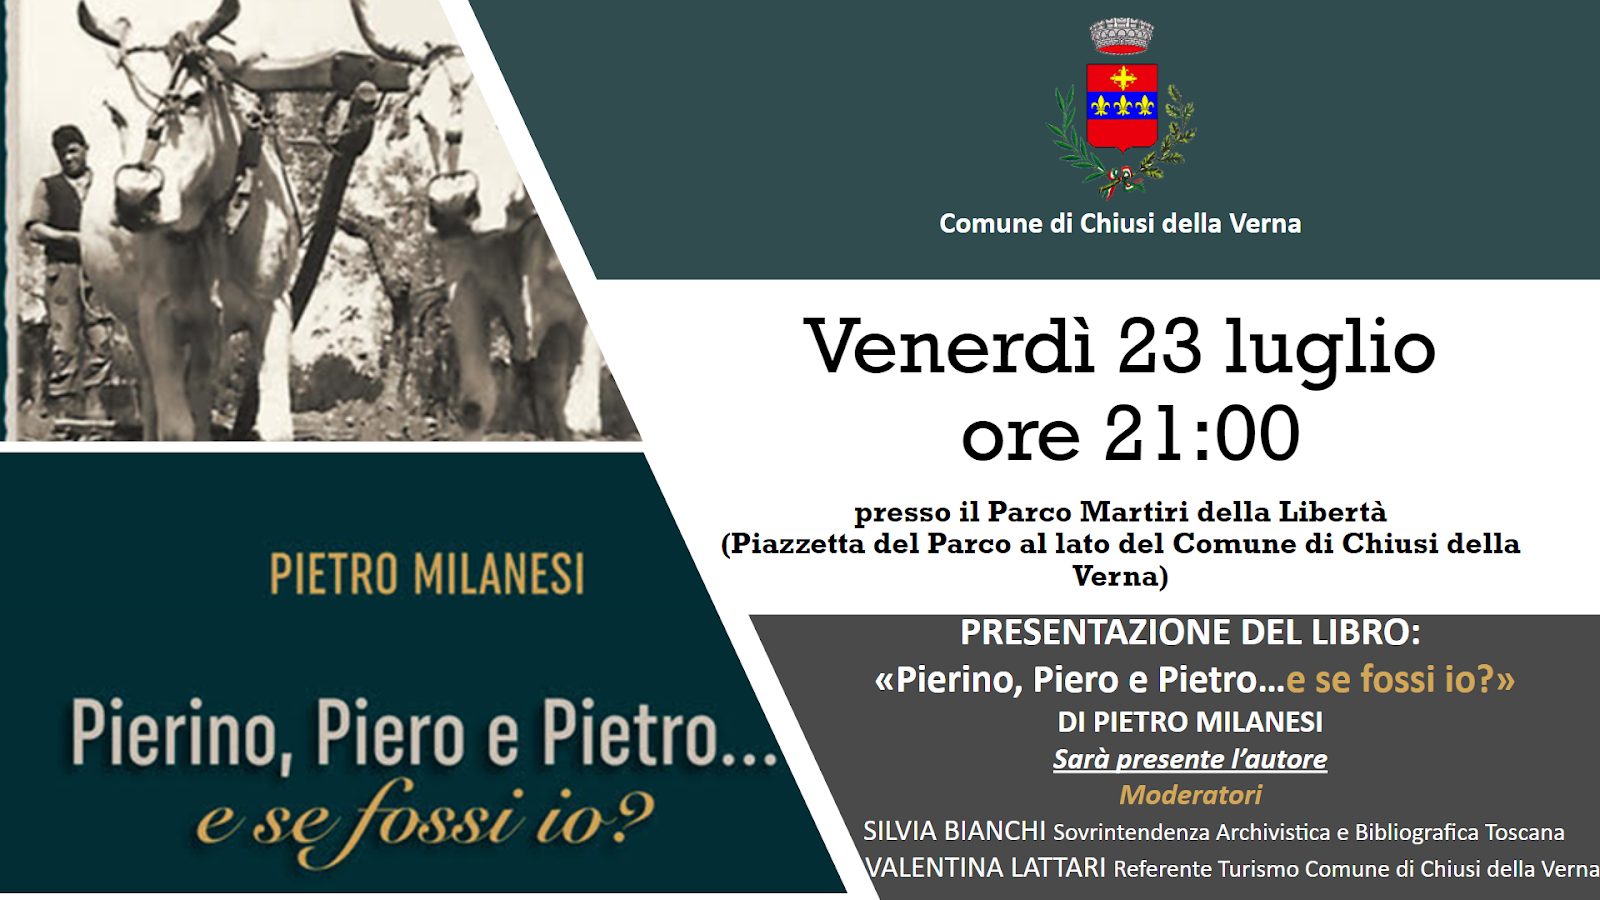 “Pierino, Piero, Pietro…e se fossi io?”, la presentazione domani a Chiusi della Verna